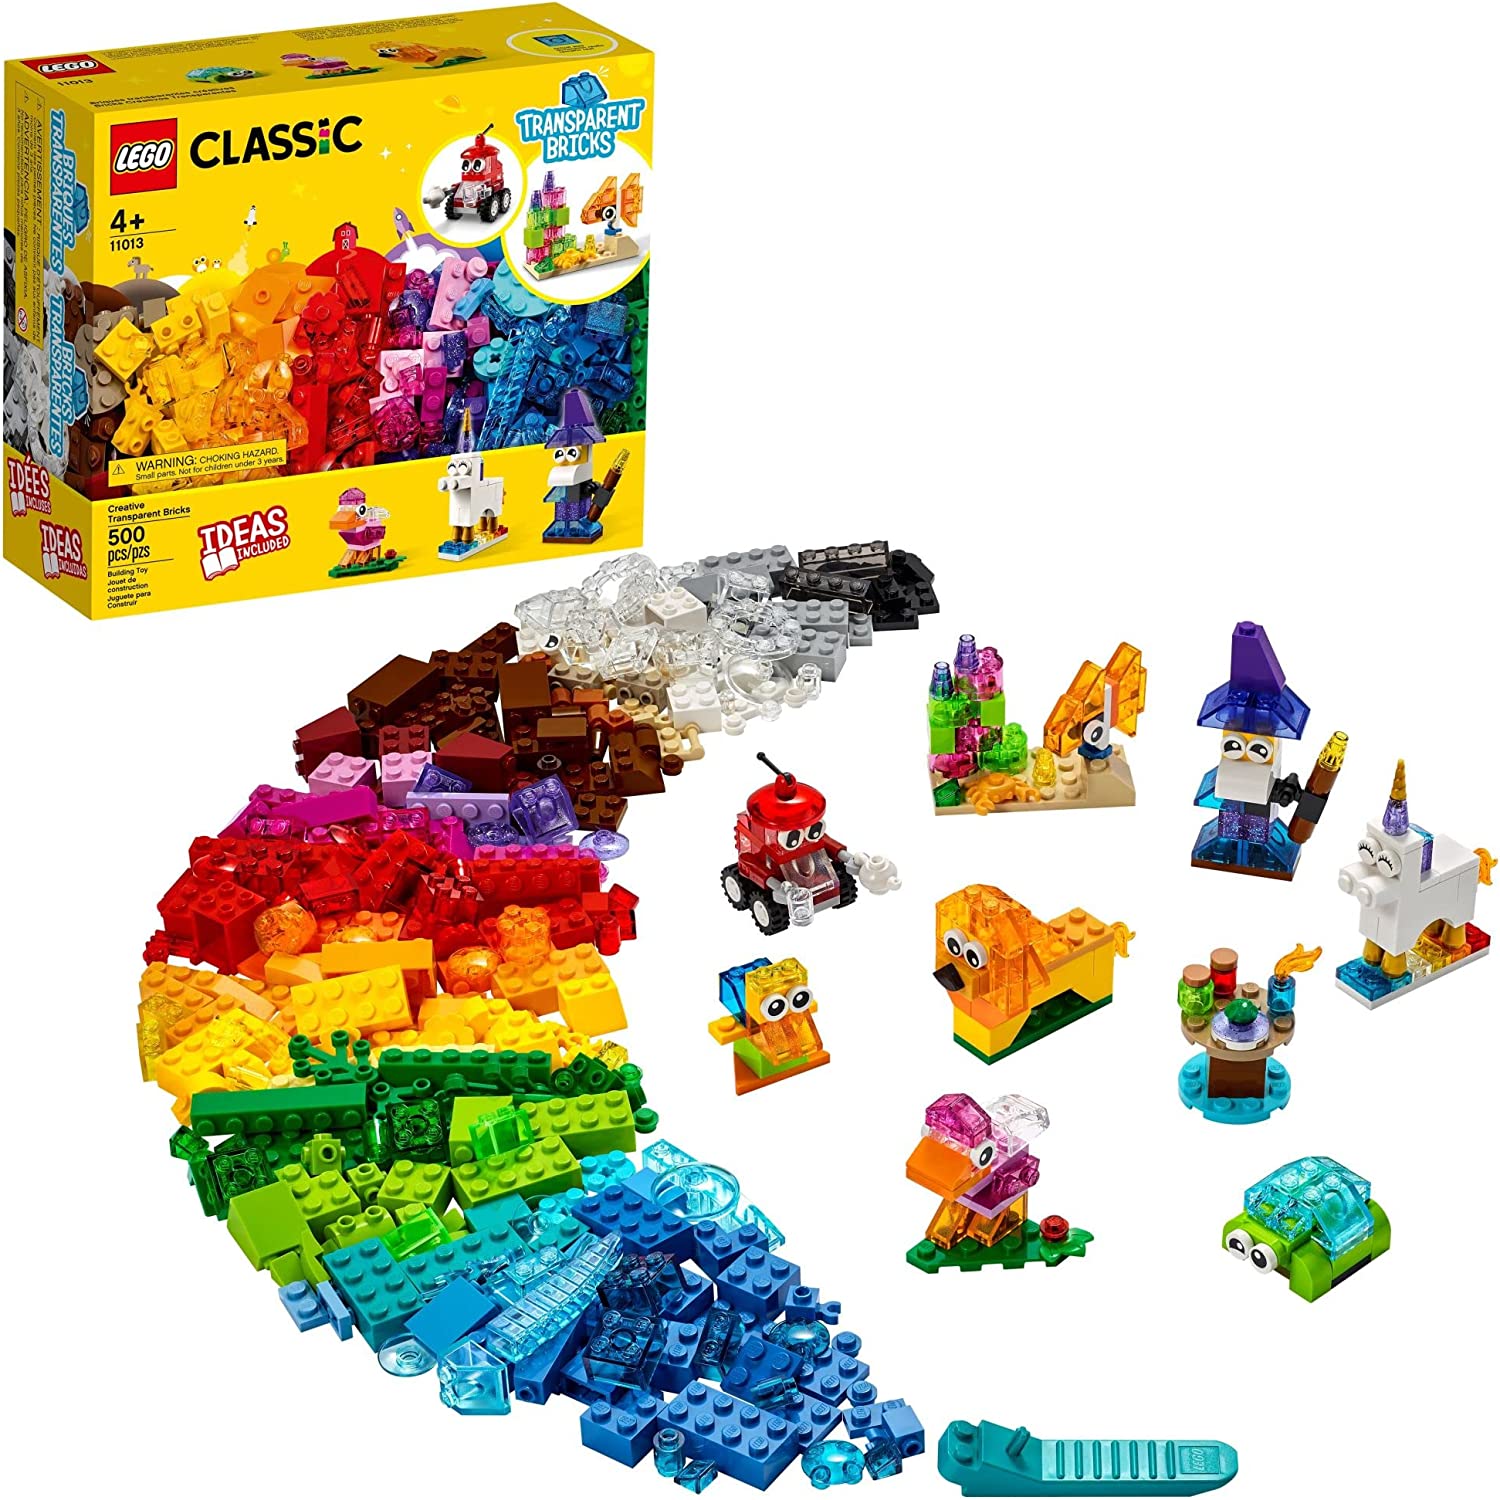 LEGO CLASSIC: BLOCOS TRANSPARENTES